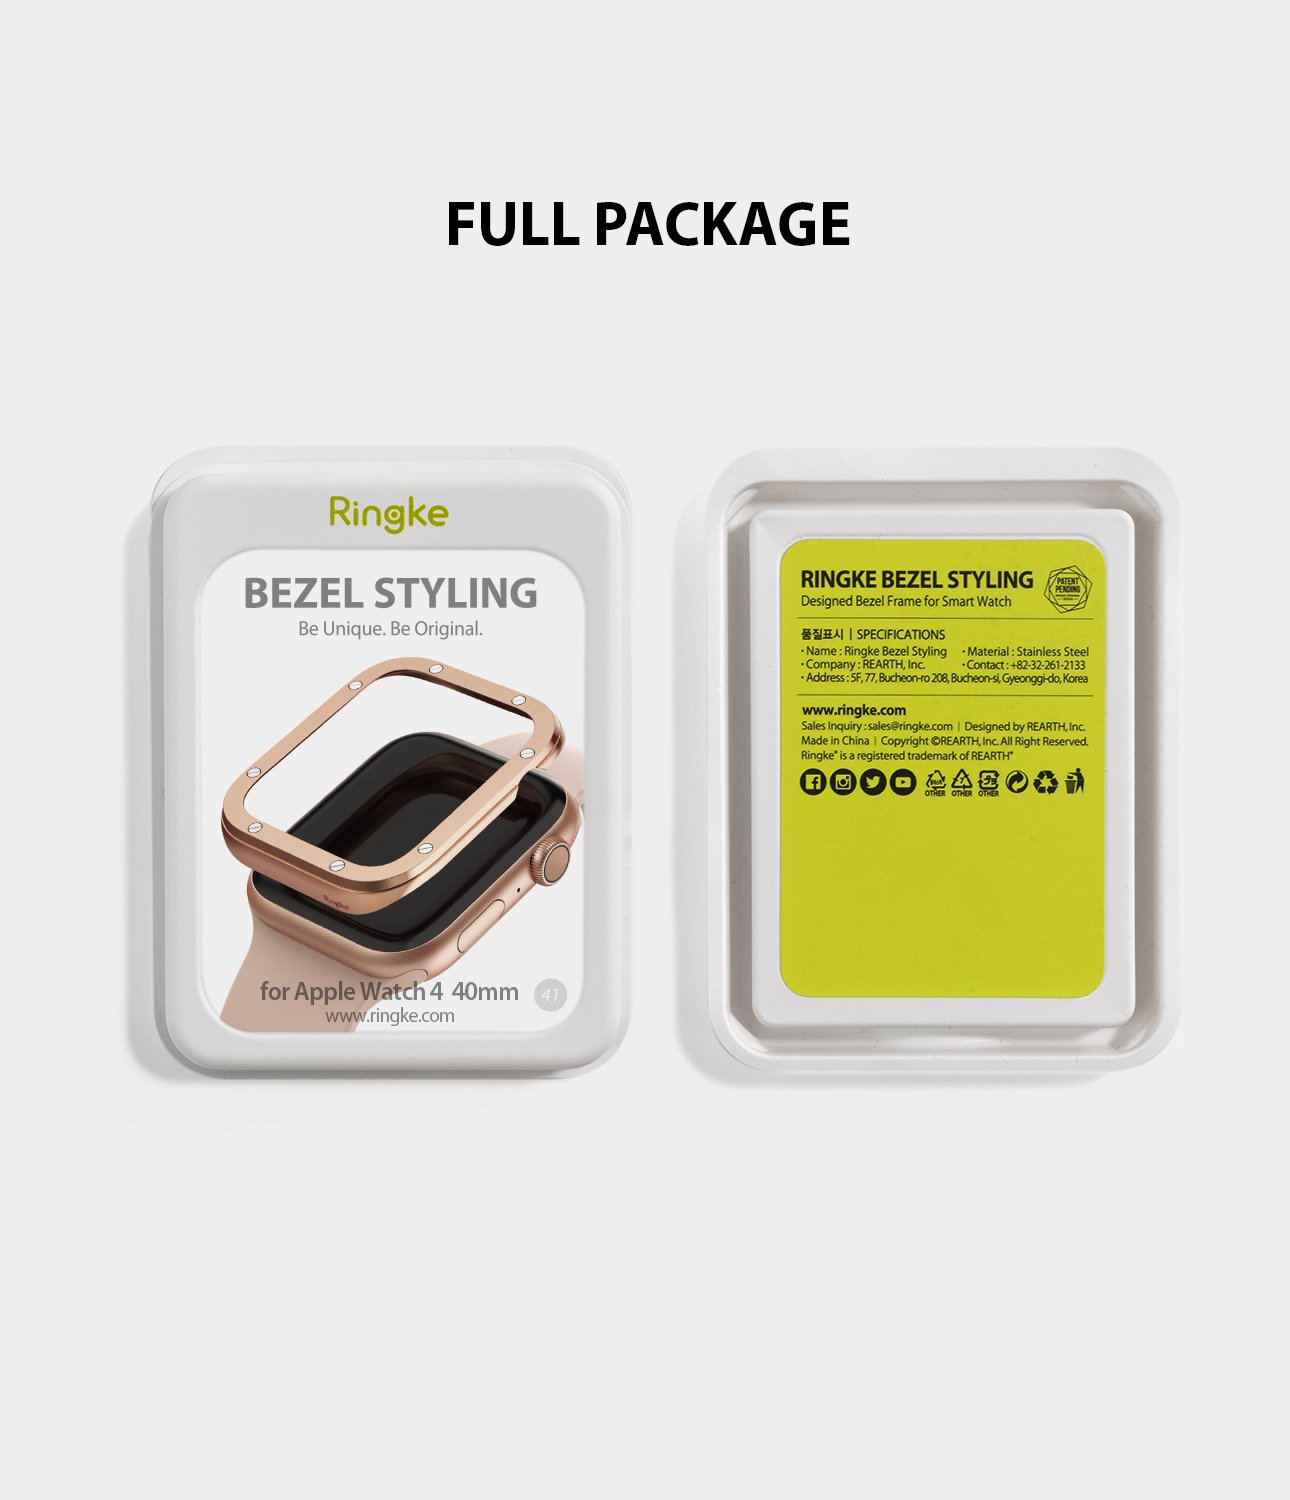 ringke bezel styling 40-41 stainless steel on apple watch series 6 / 5 / 4 / SE 40mm full package